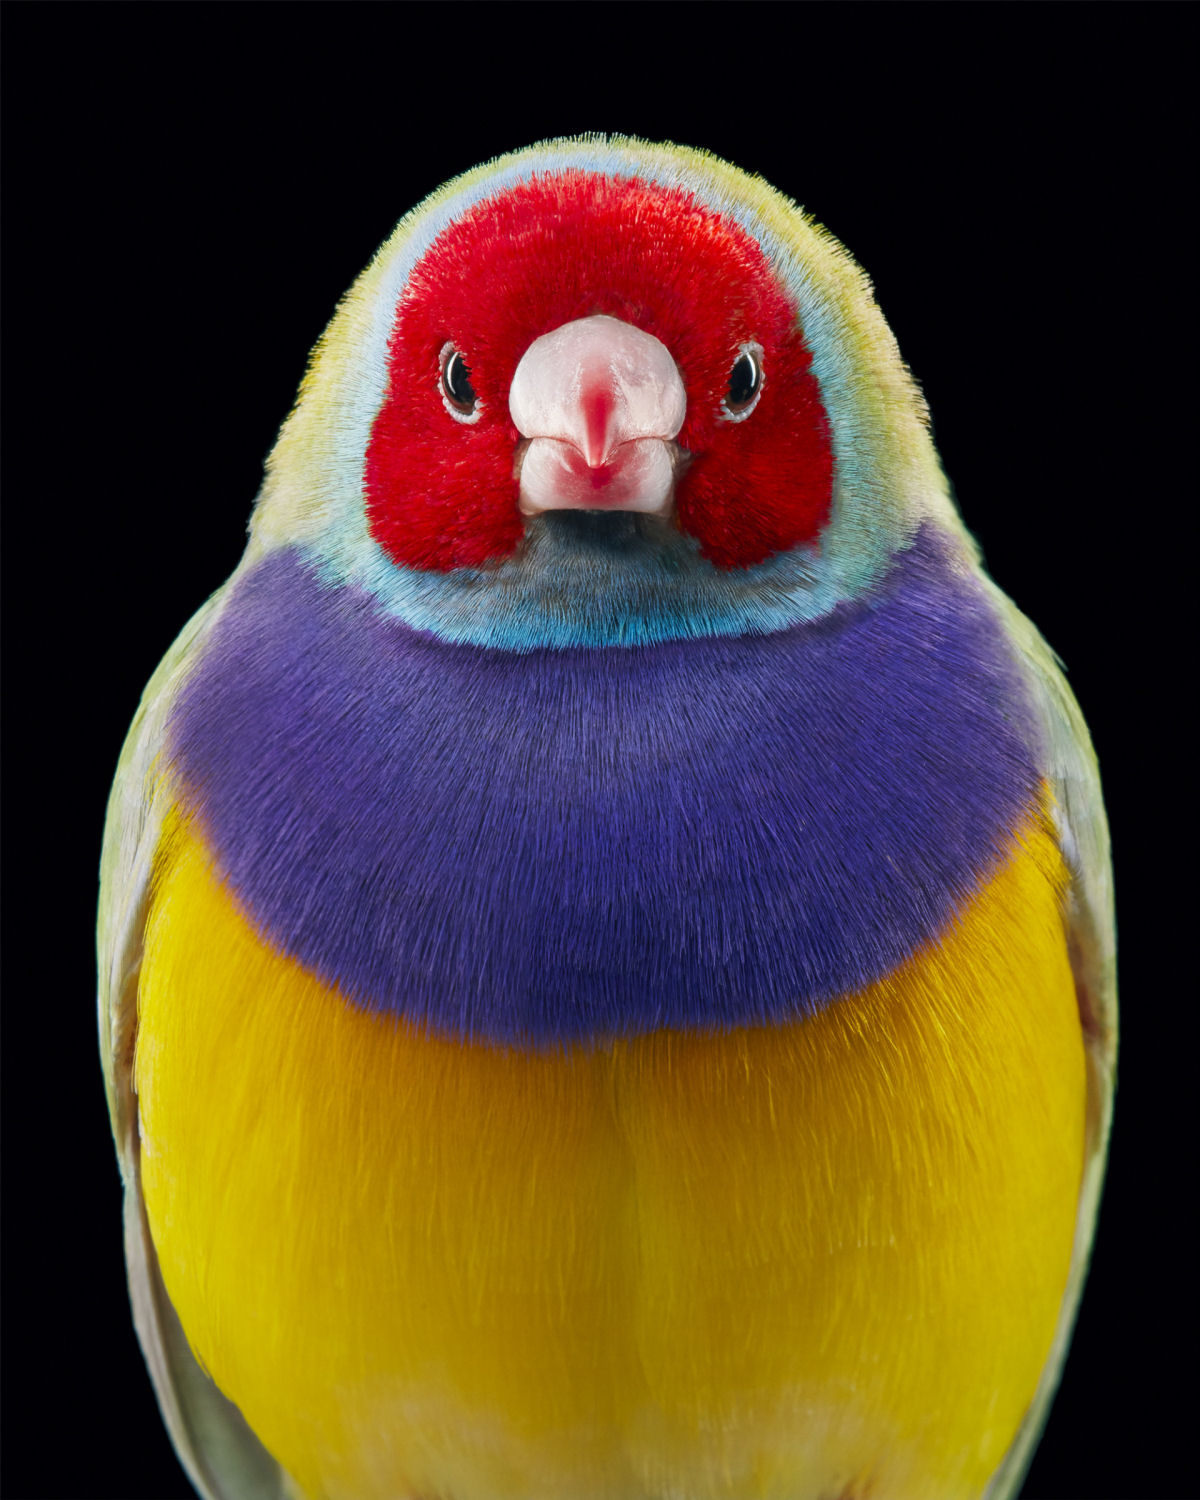 Fotógrafo londrino destaca pássaros incomuns e ameaçados de extinção em retratos impressionantes 05